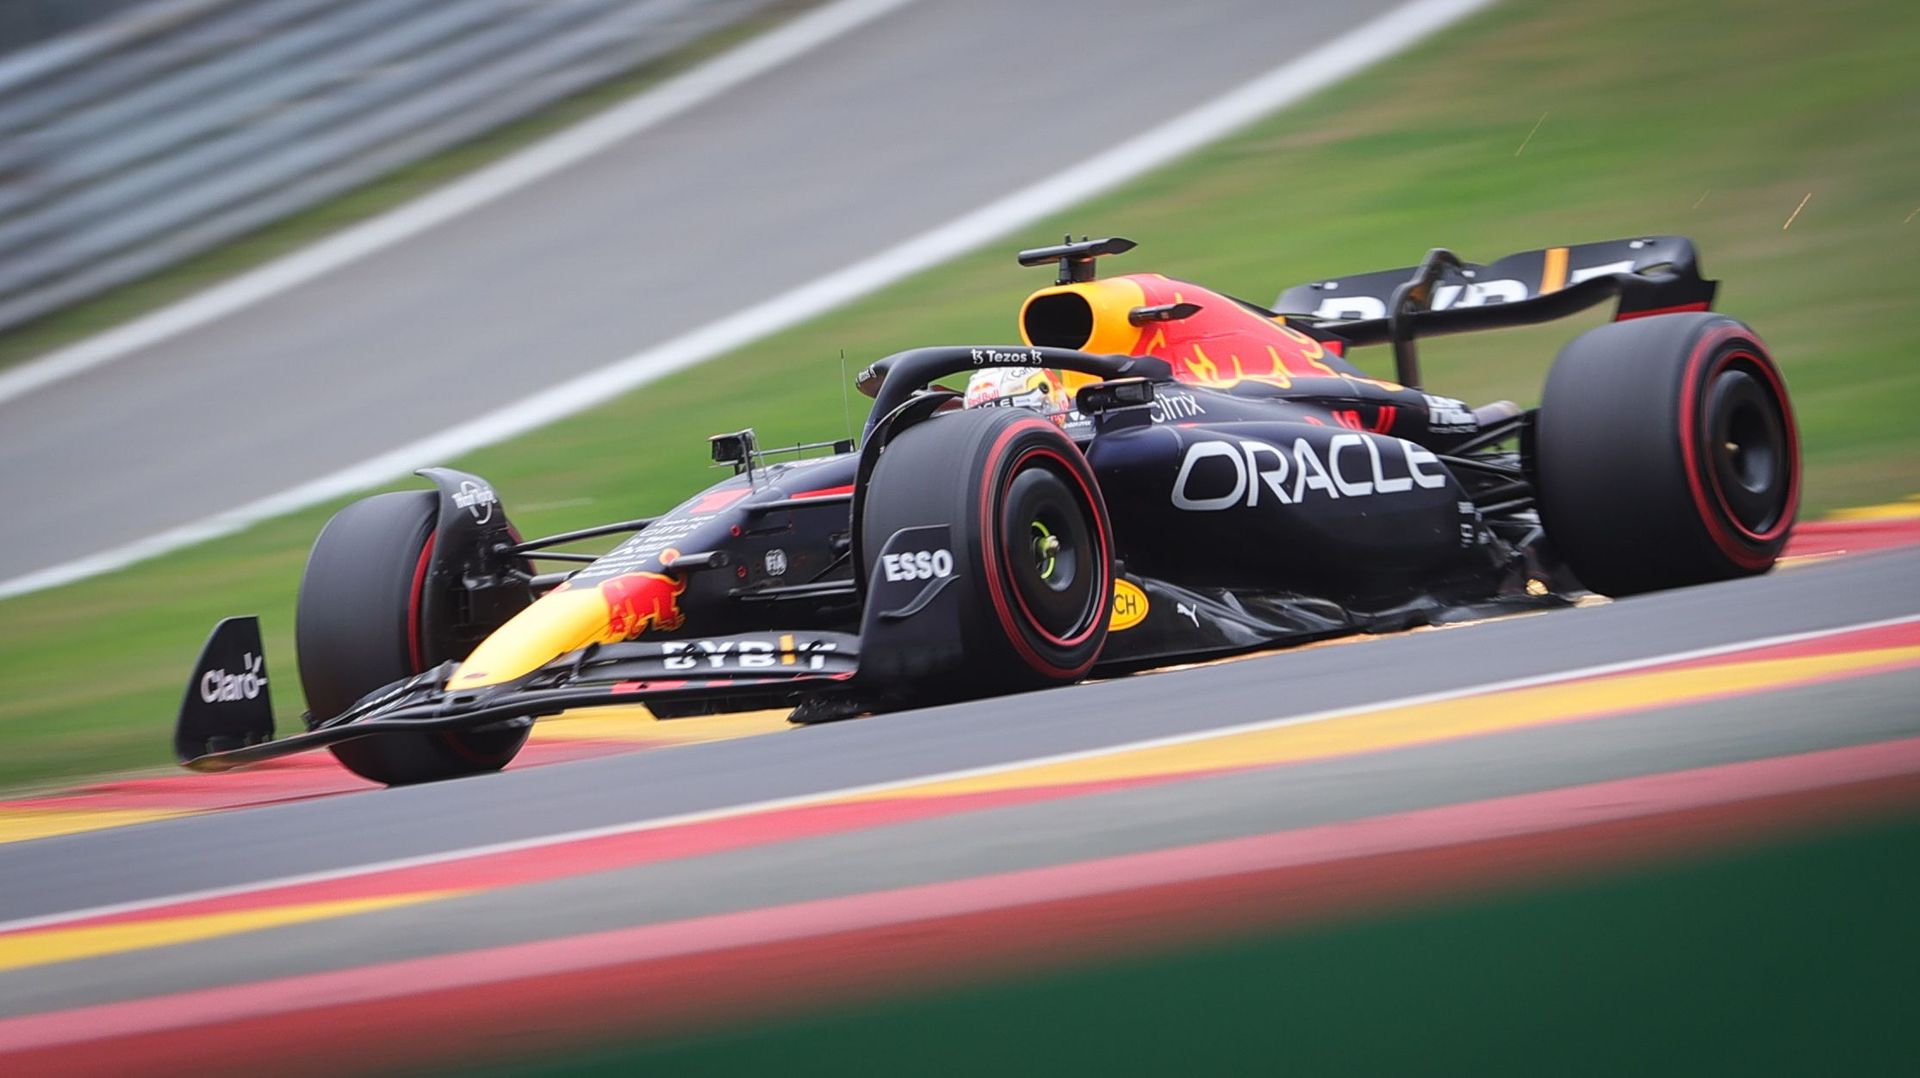 UFFICIALE: Il Gran Premio del Belgio di Formula 1, a Spa-Francorchamps, sarà in calendario nel 2023!